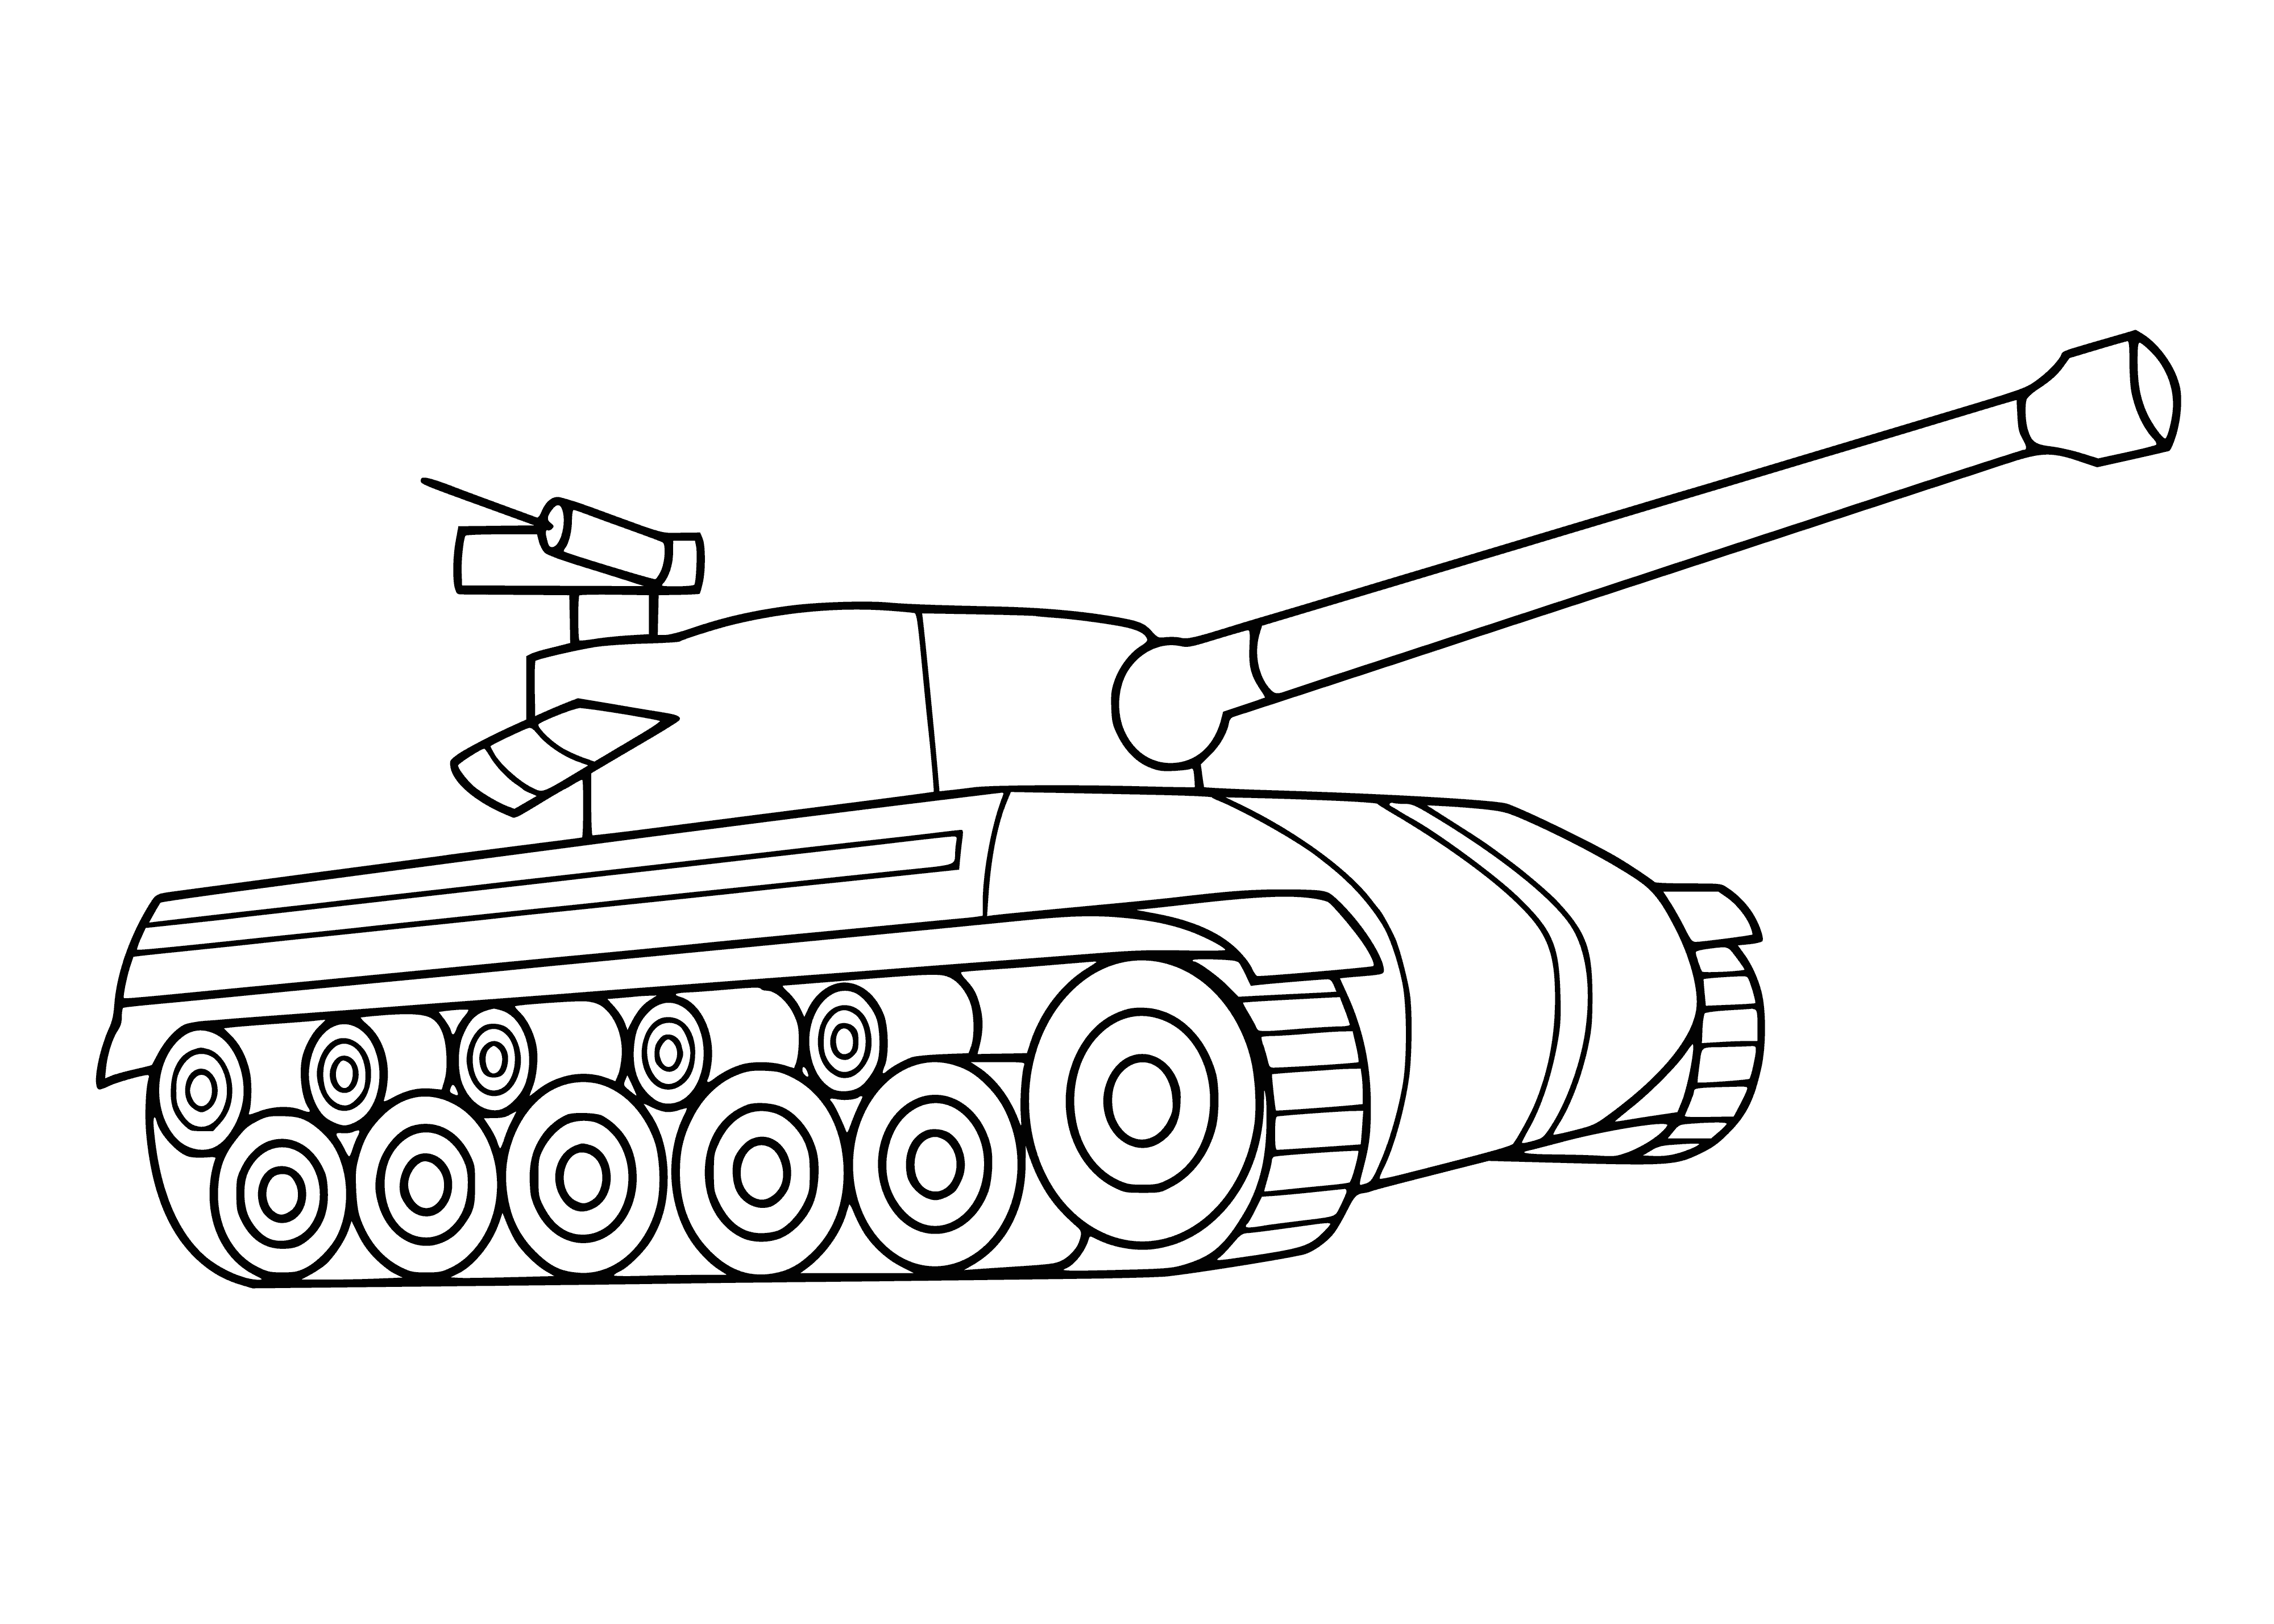 Раскраска танк для детей 4 5. Раскраска танк т 34. Раскраска танк т34 Военная техника. Танк т-34 рисунок. Раскраски танков т 34 85.